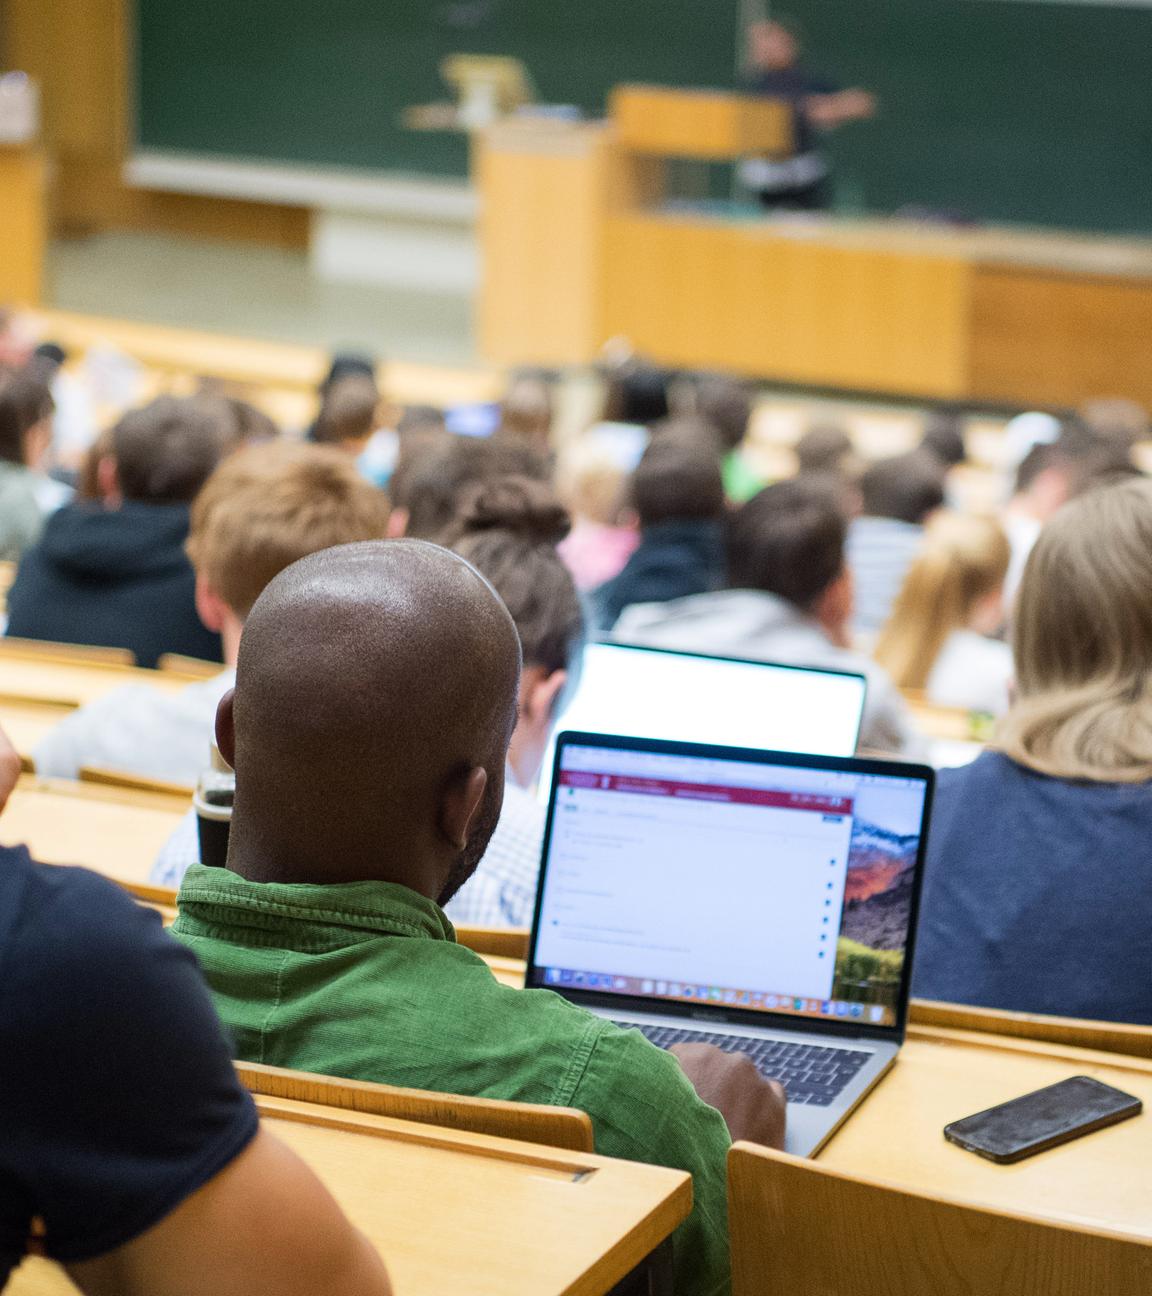 Archiv: Studierende sitzen mit Laptops in einer Vorlesung, aufgenommen am 17.04.2018 in Tübingen